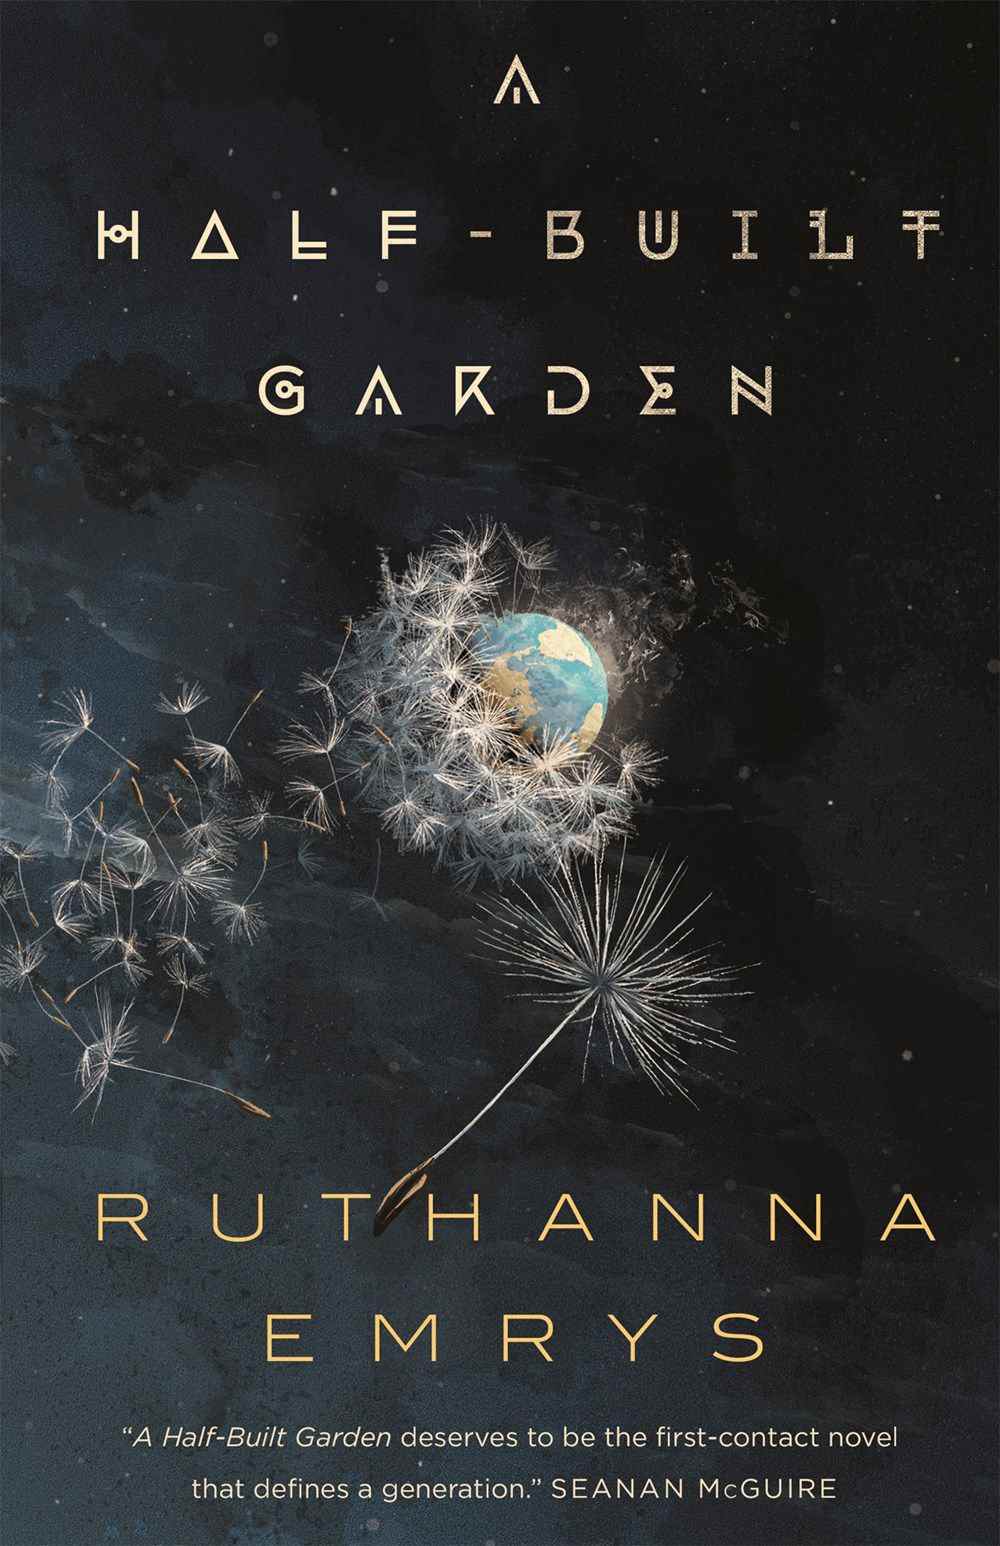 Image de couverture pour A Half-Built Garden, qui présente la Terre à distance entourée de graines de pissenlit.